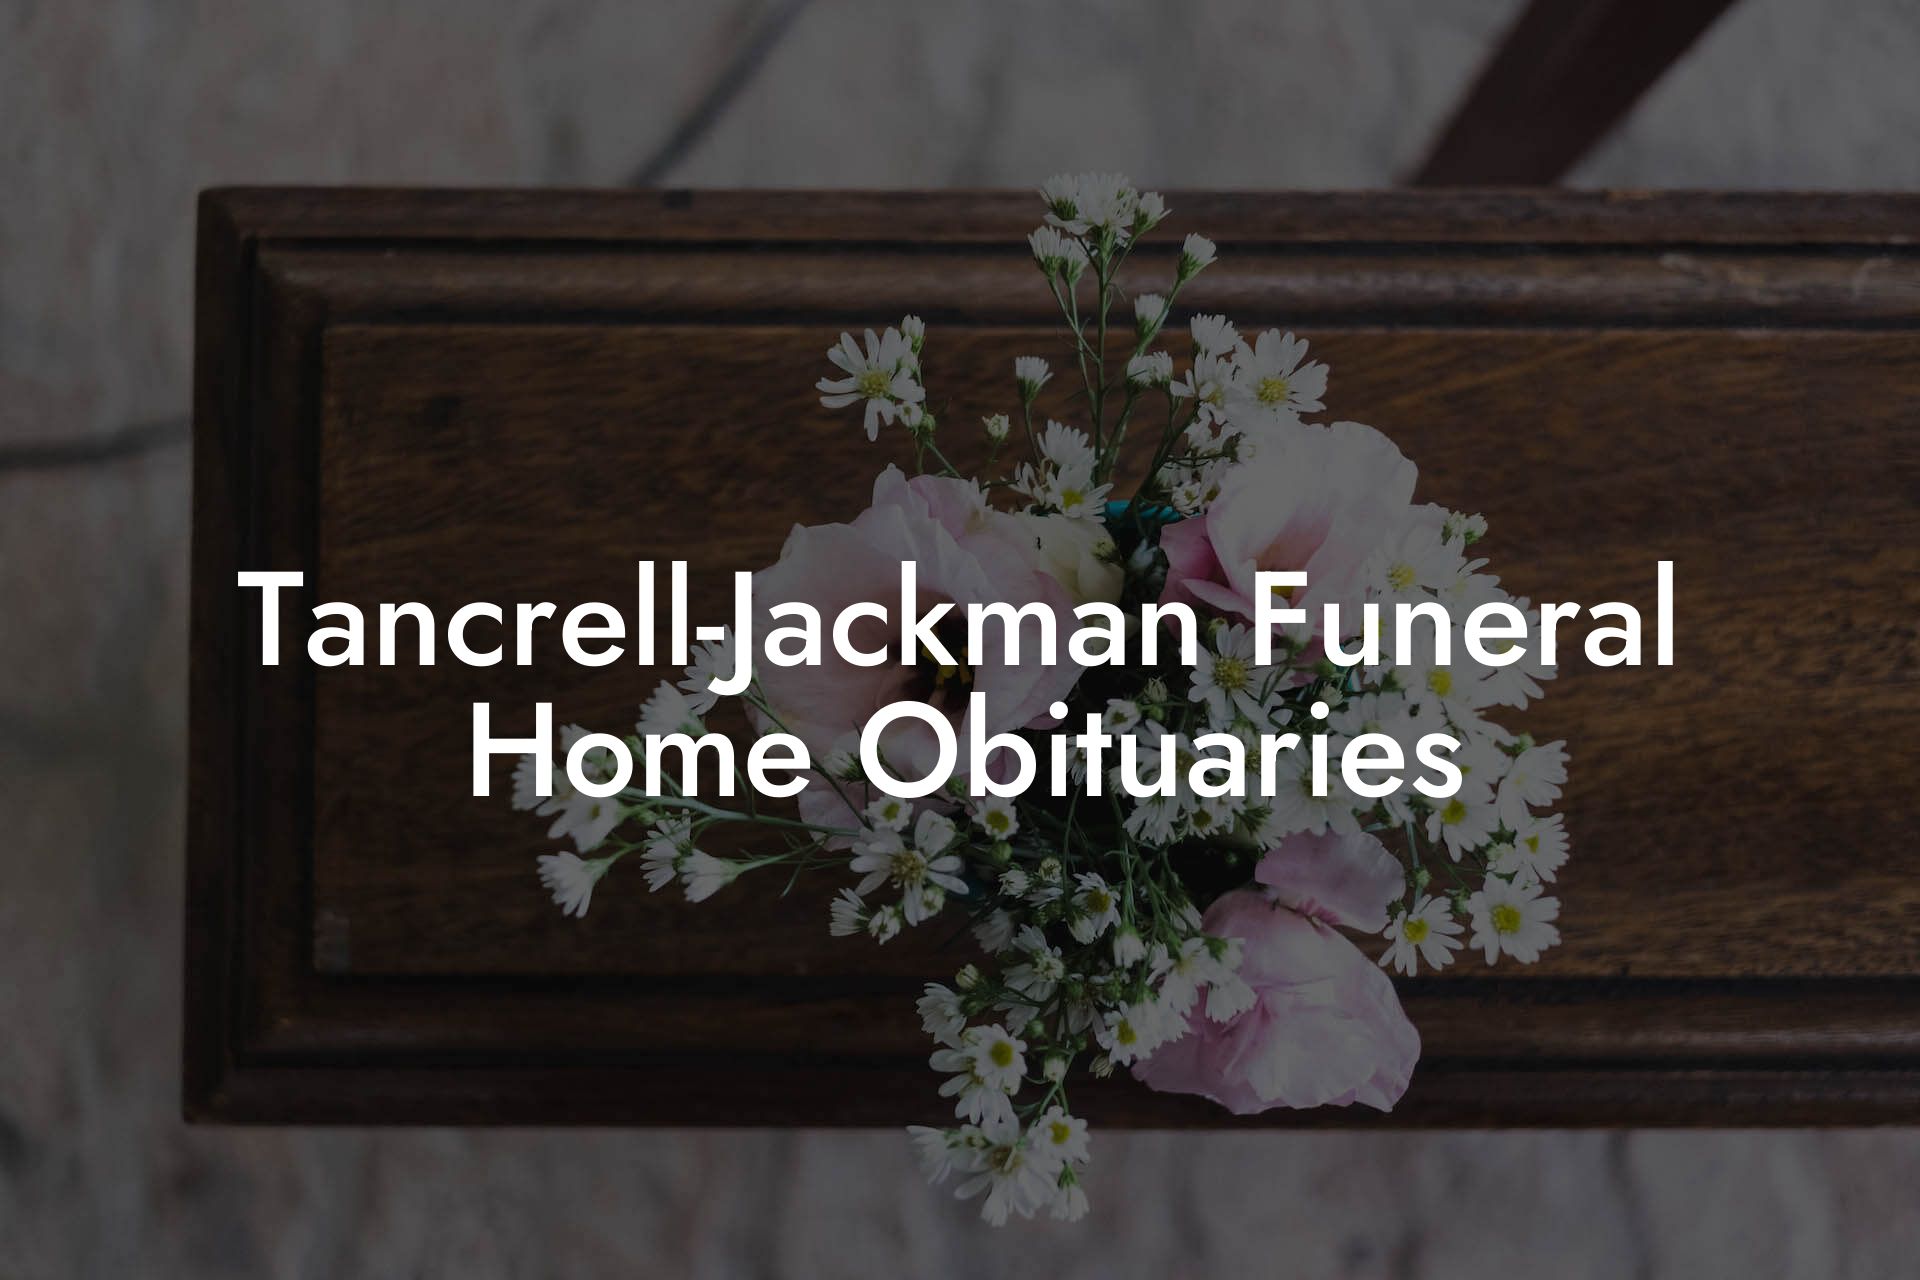 Tancrell-Jackman Funeral Home Obituaries